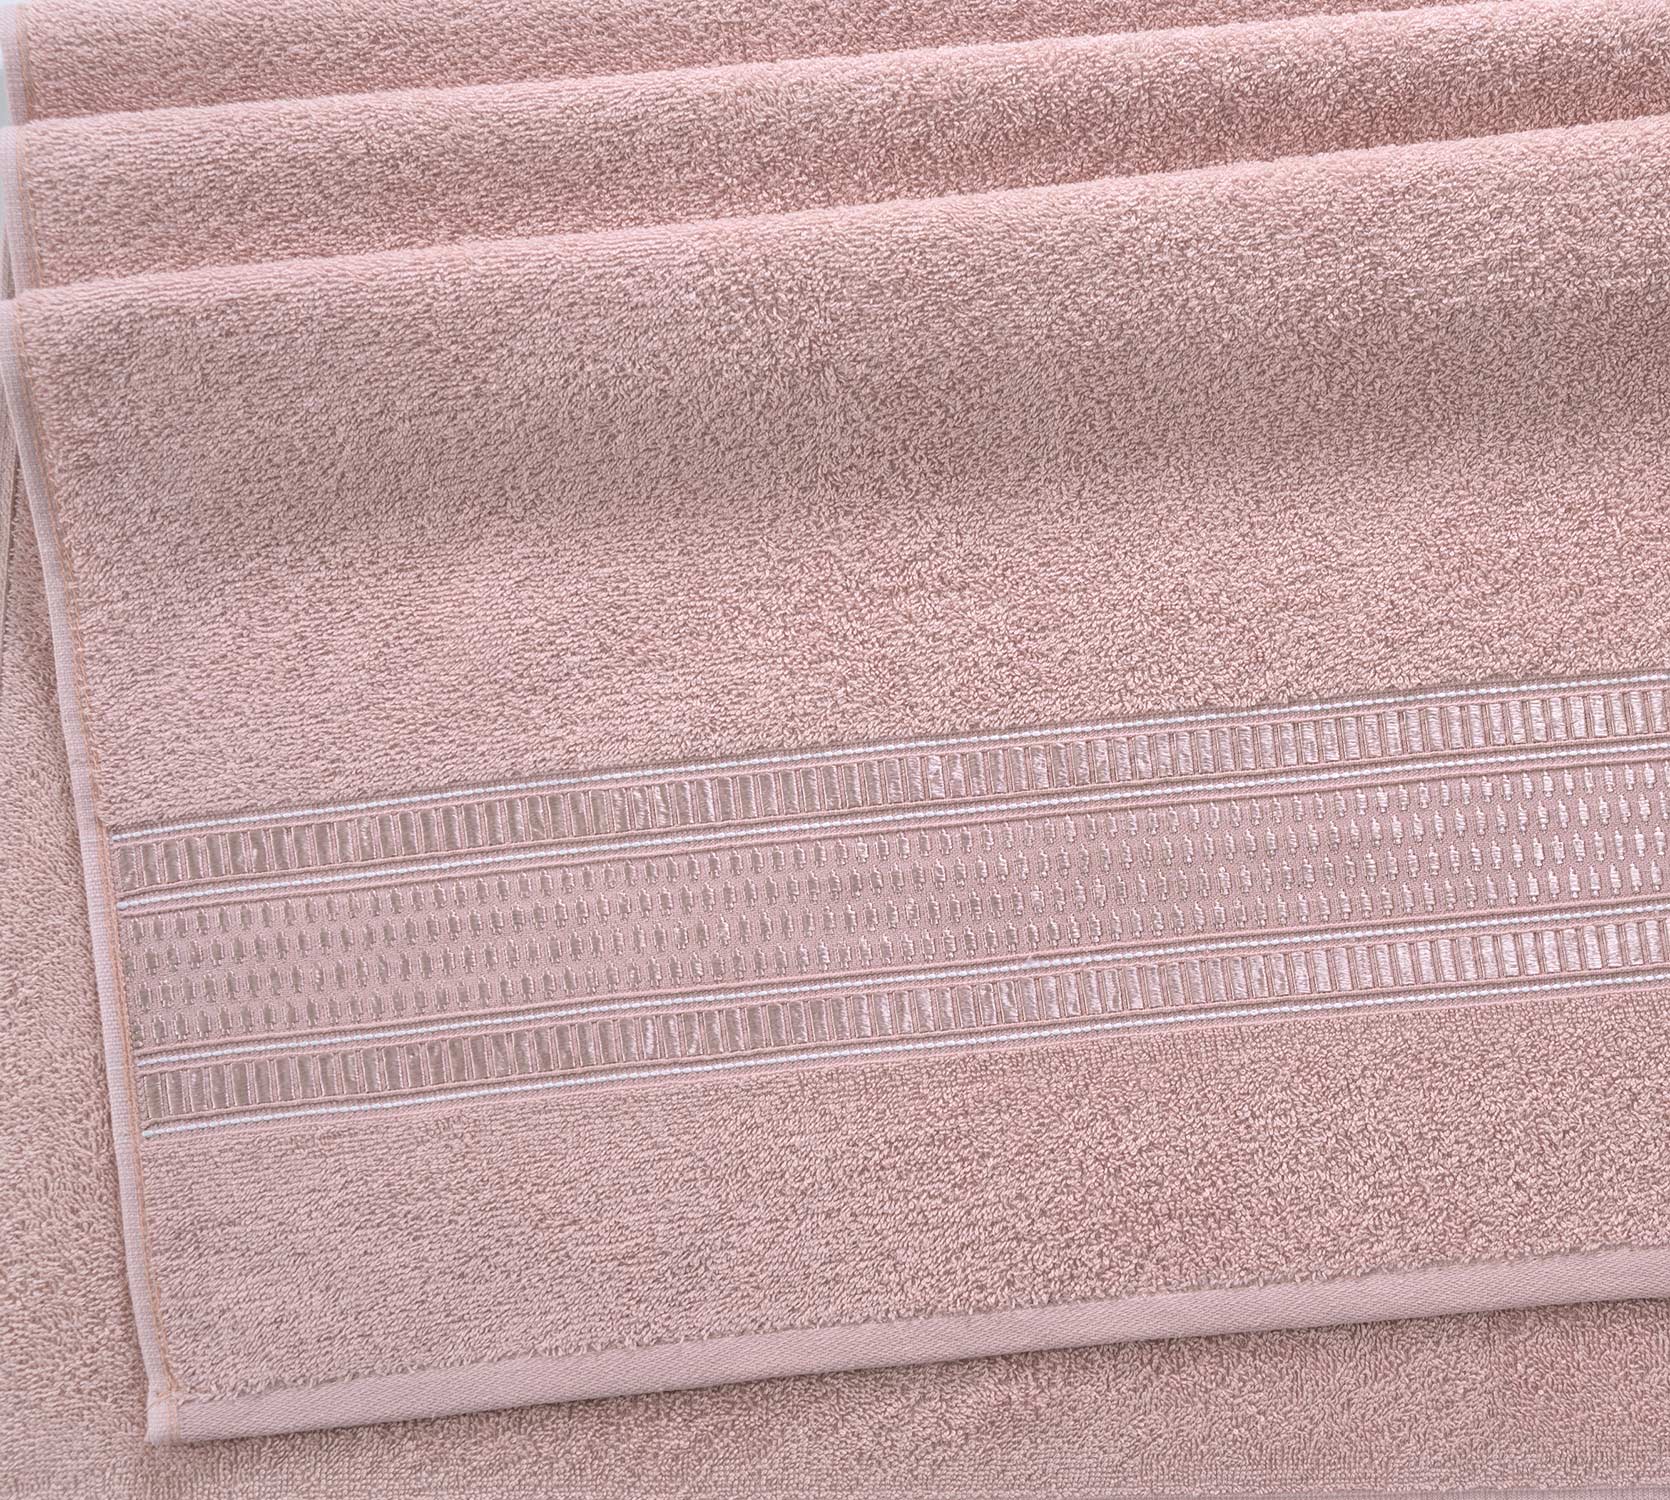 Постельное белье Полотенце махровое банное 70x140, Фортуна нежно-розовый фото